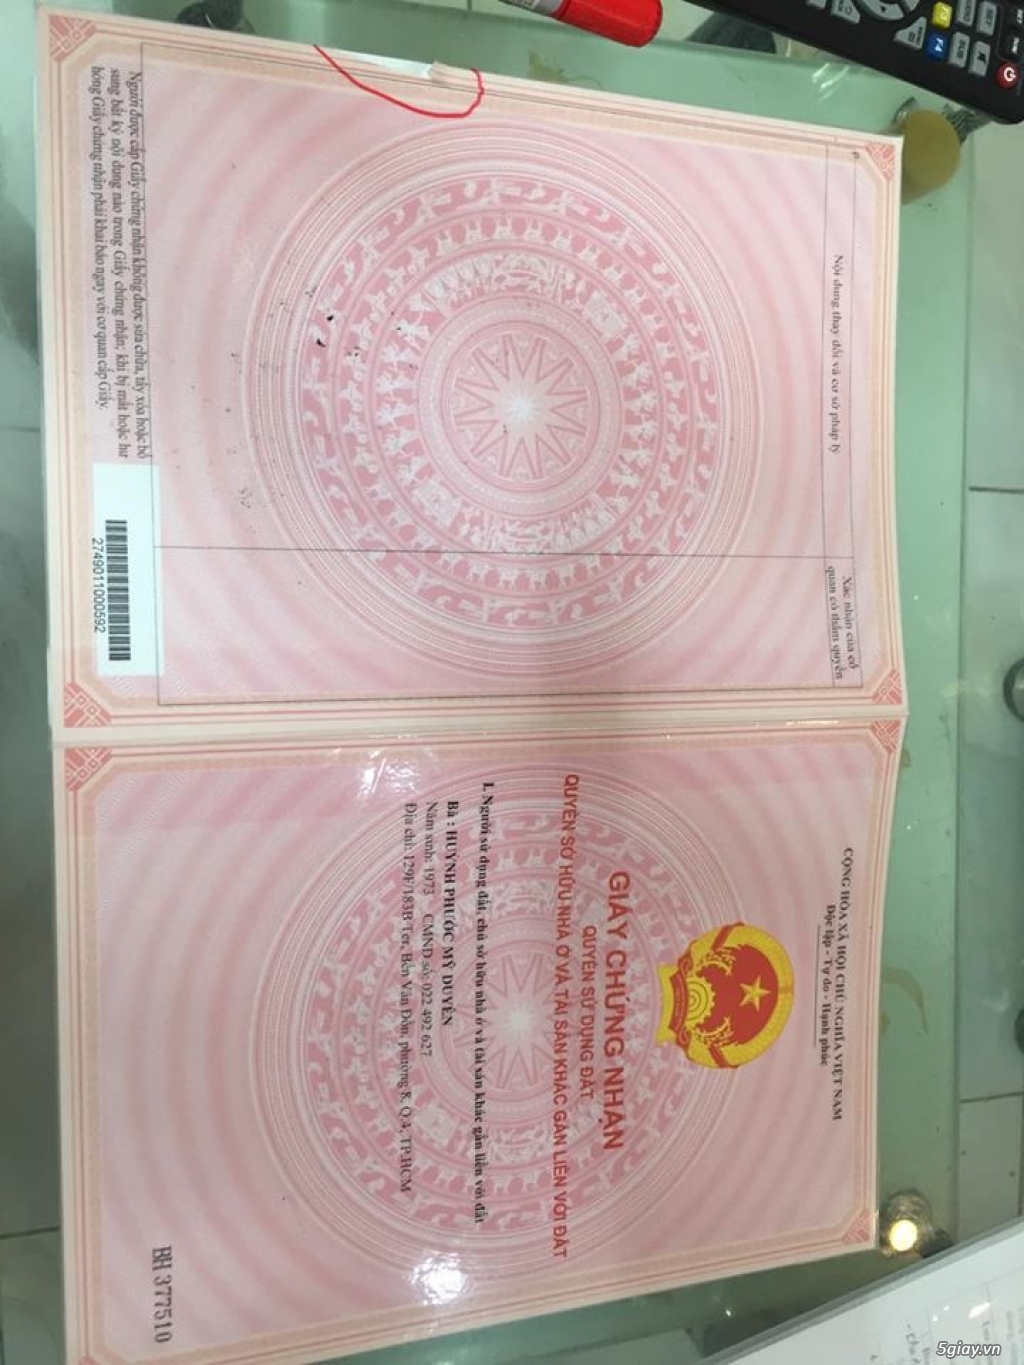 Chuyên bóc lớp ép plastic các loại giấy tờ tại Tân Bình - 2